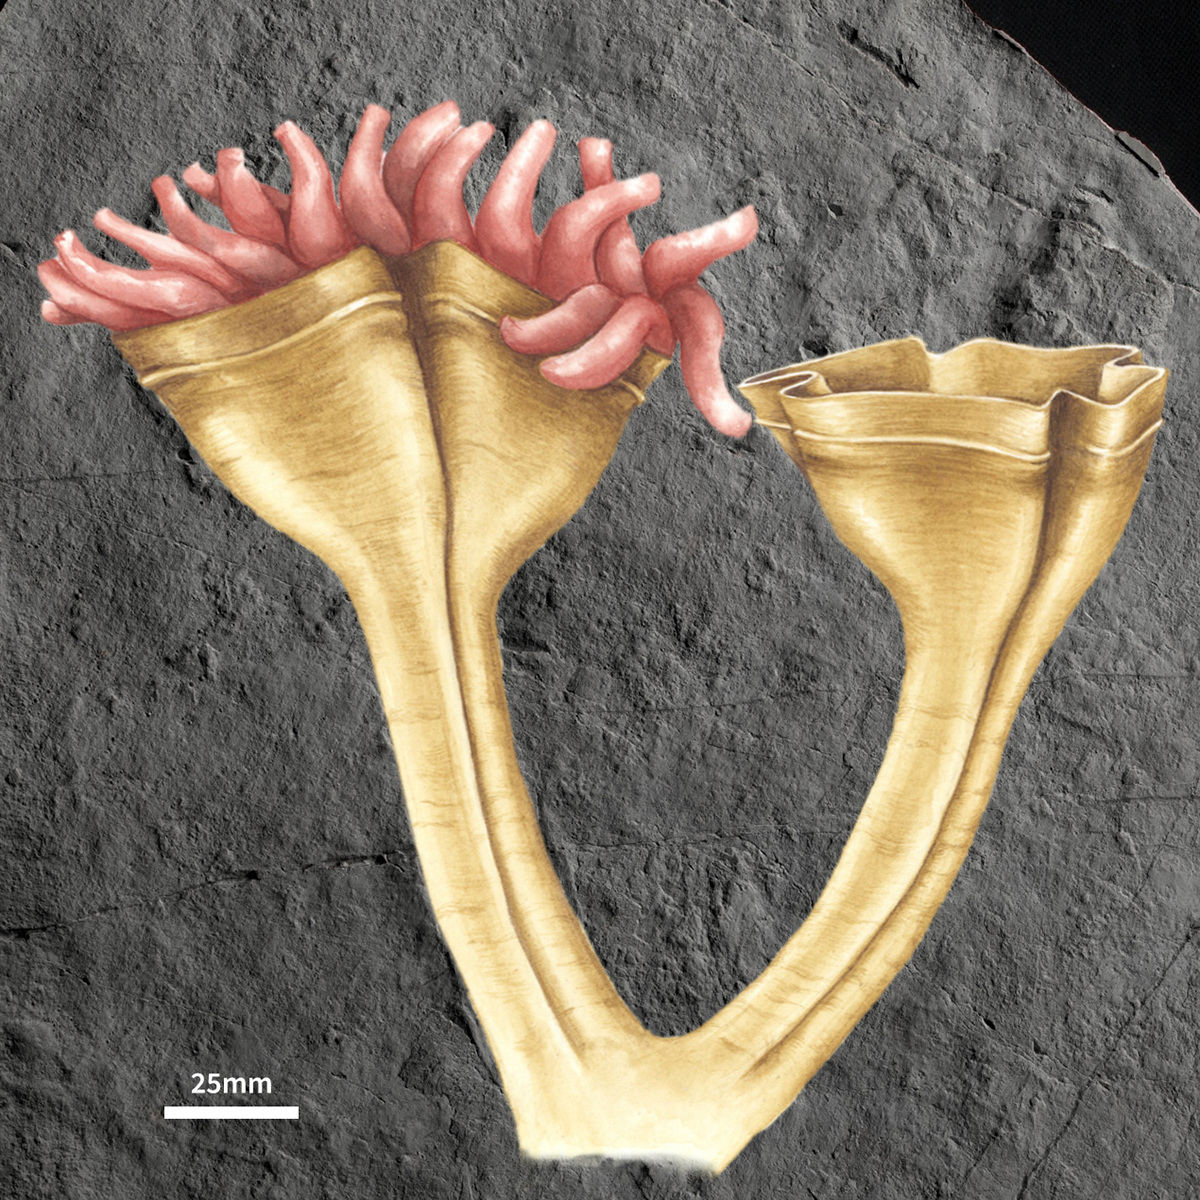 英国查恩伍德森林发现来自埃迪卡拉纪(5.62亿年至5.57亿前)的刺胞动物化石